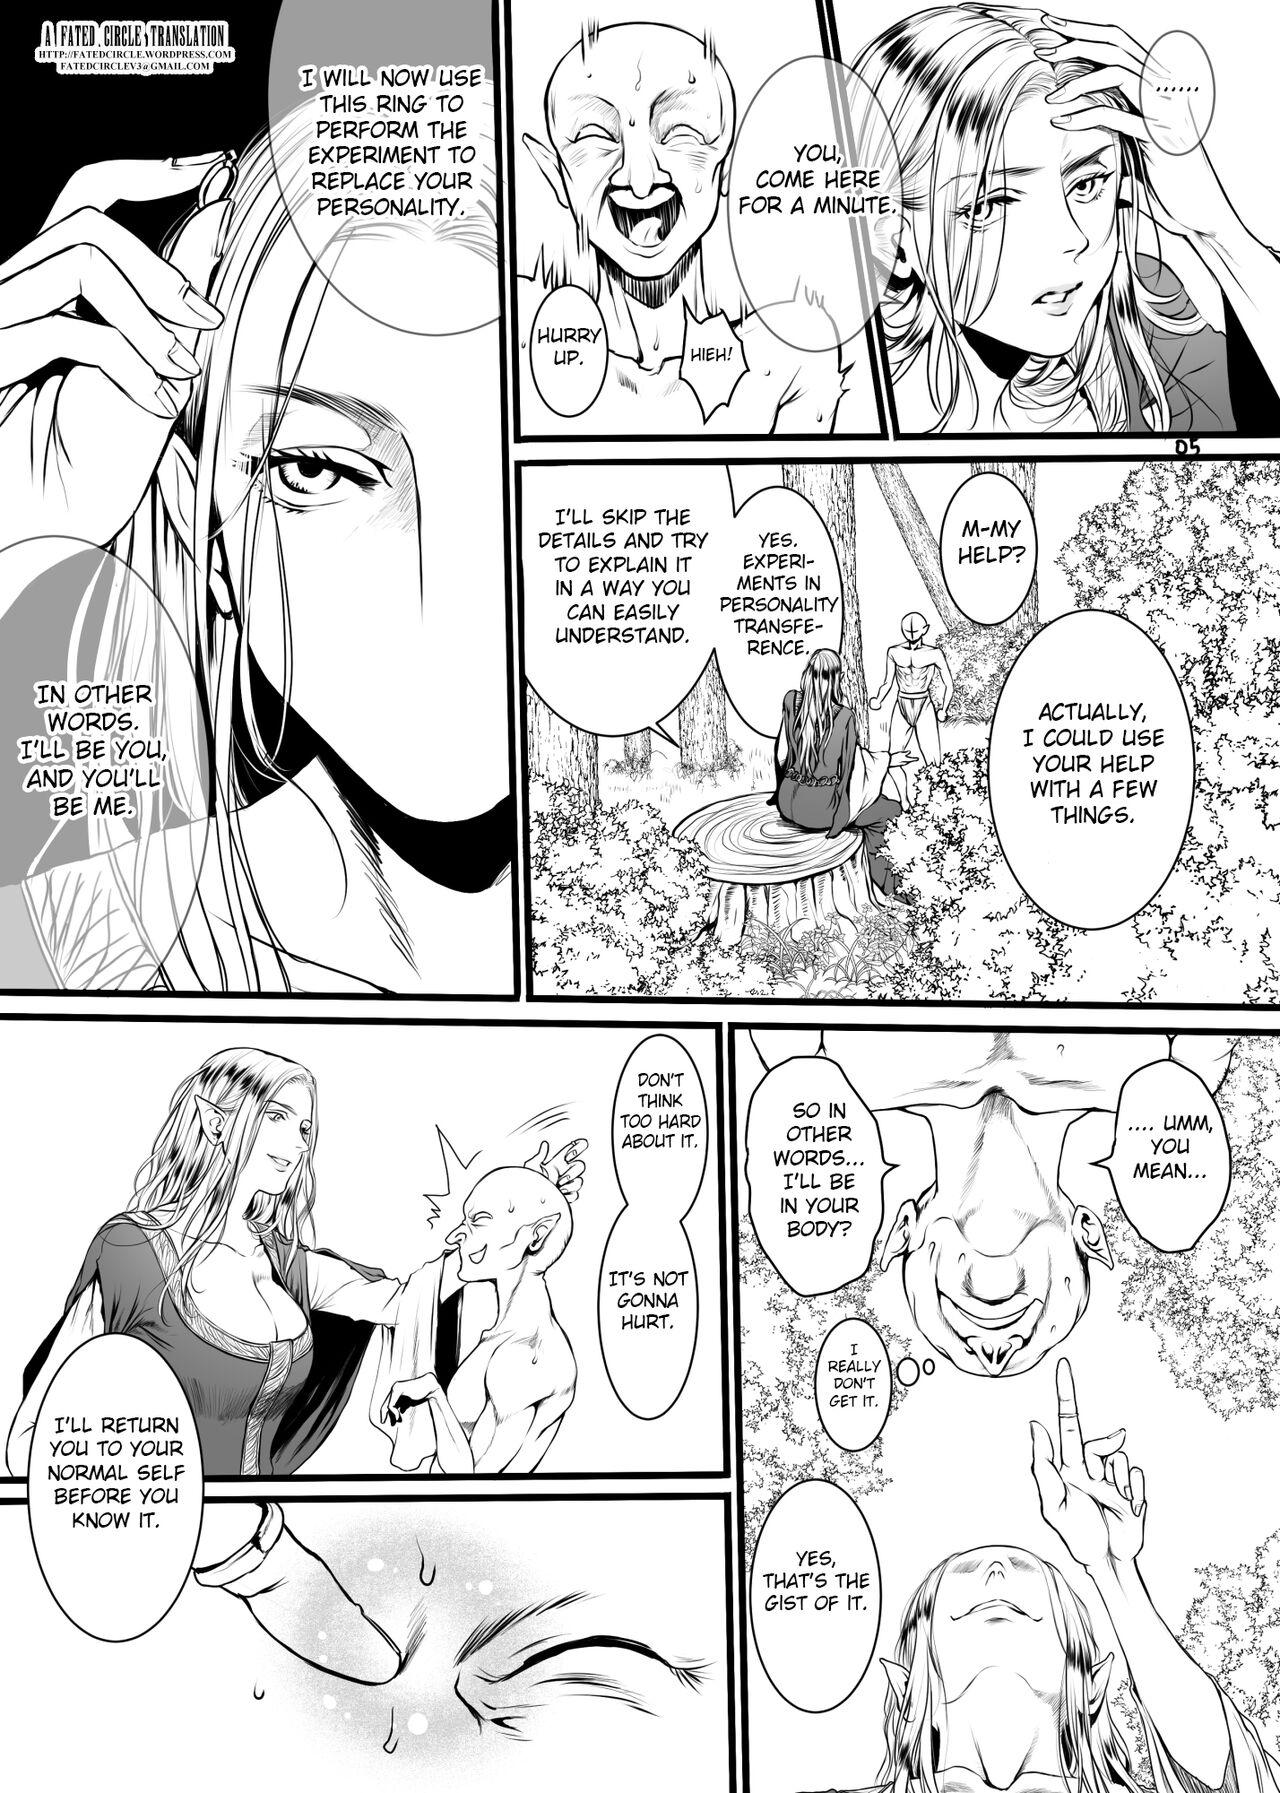 Sexteen Kansei wo Akiramta TSF Manga - Original Inked - Page 2